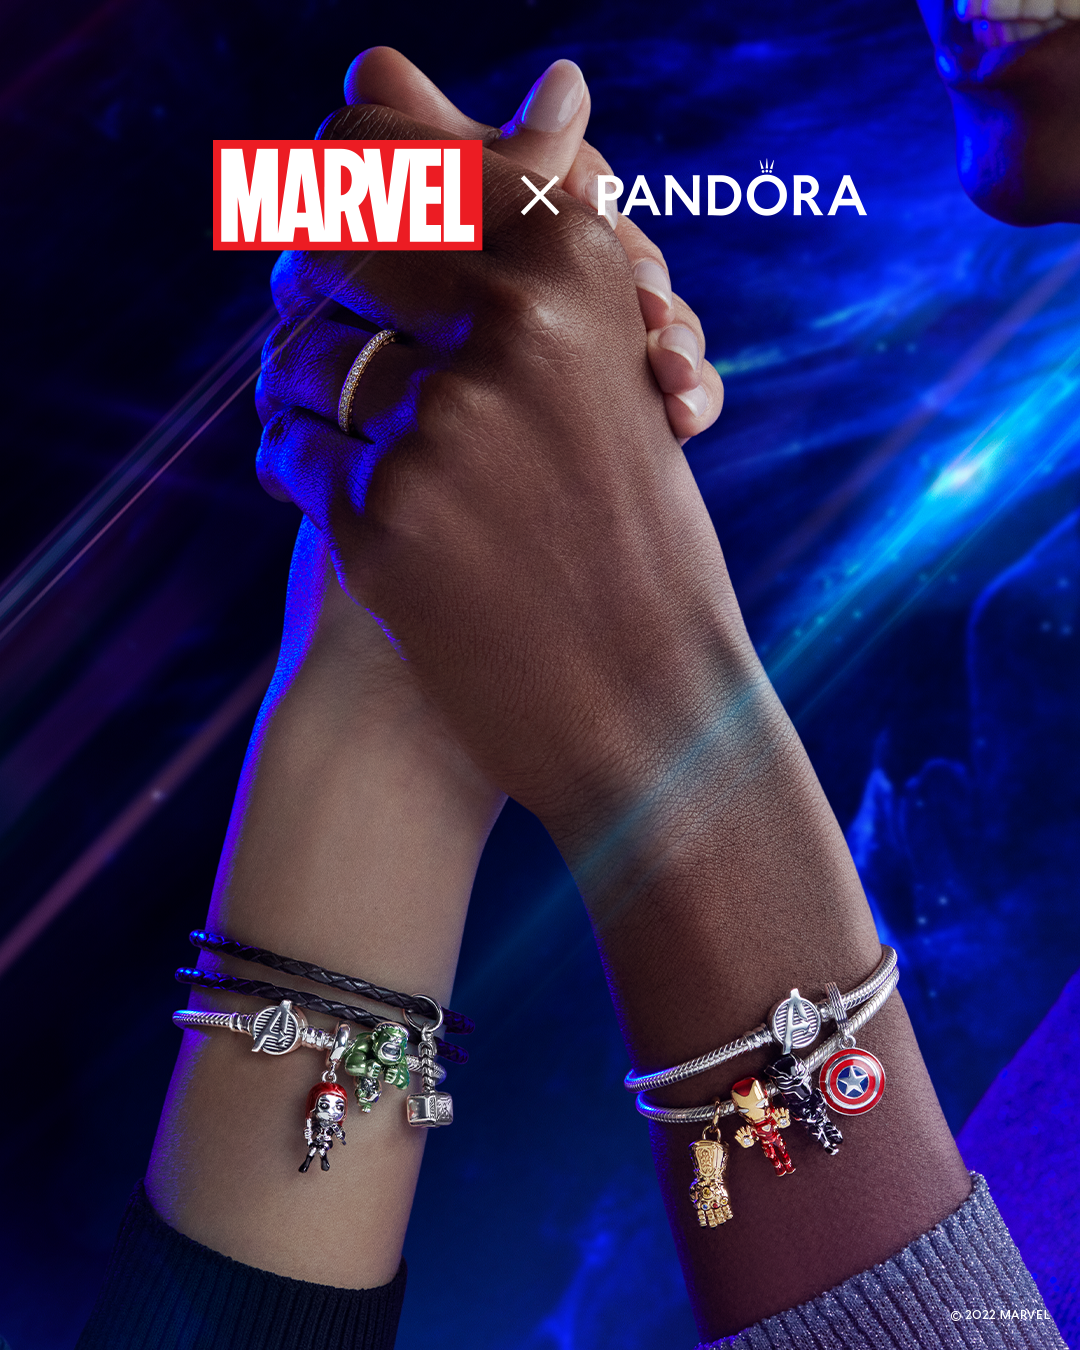 Pandora and Marvel charms